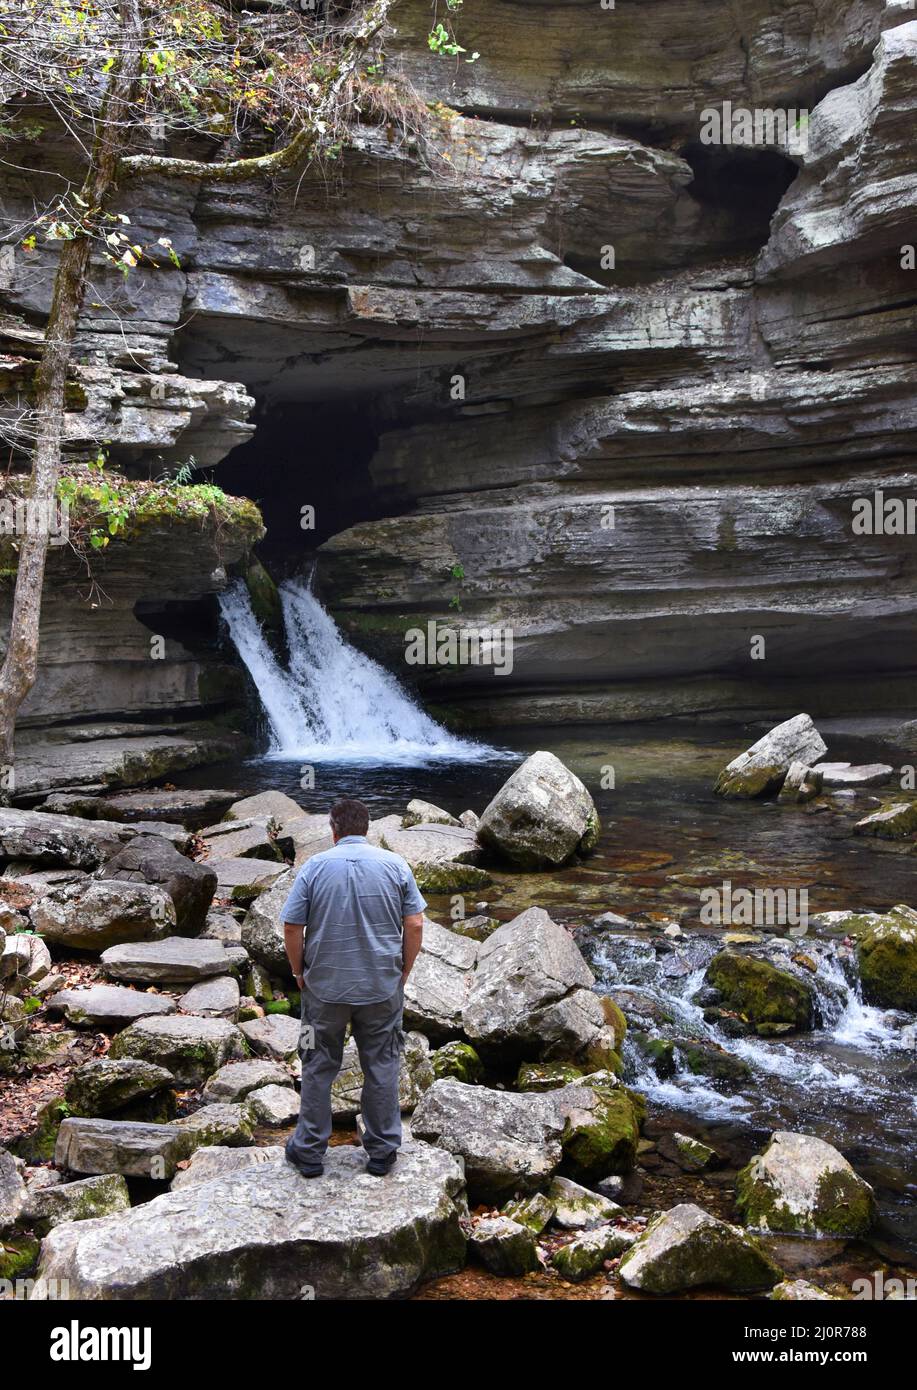 Der Besucher der Blanchard Springs Caverns steht auf einem großen Felsen und bewundert den Wasserfall. Er hat eine graue Hose und ein graues Hemd und hat Hände in den Taschen. Stockfoto